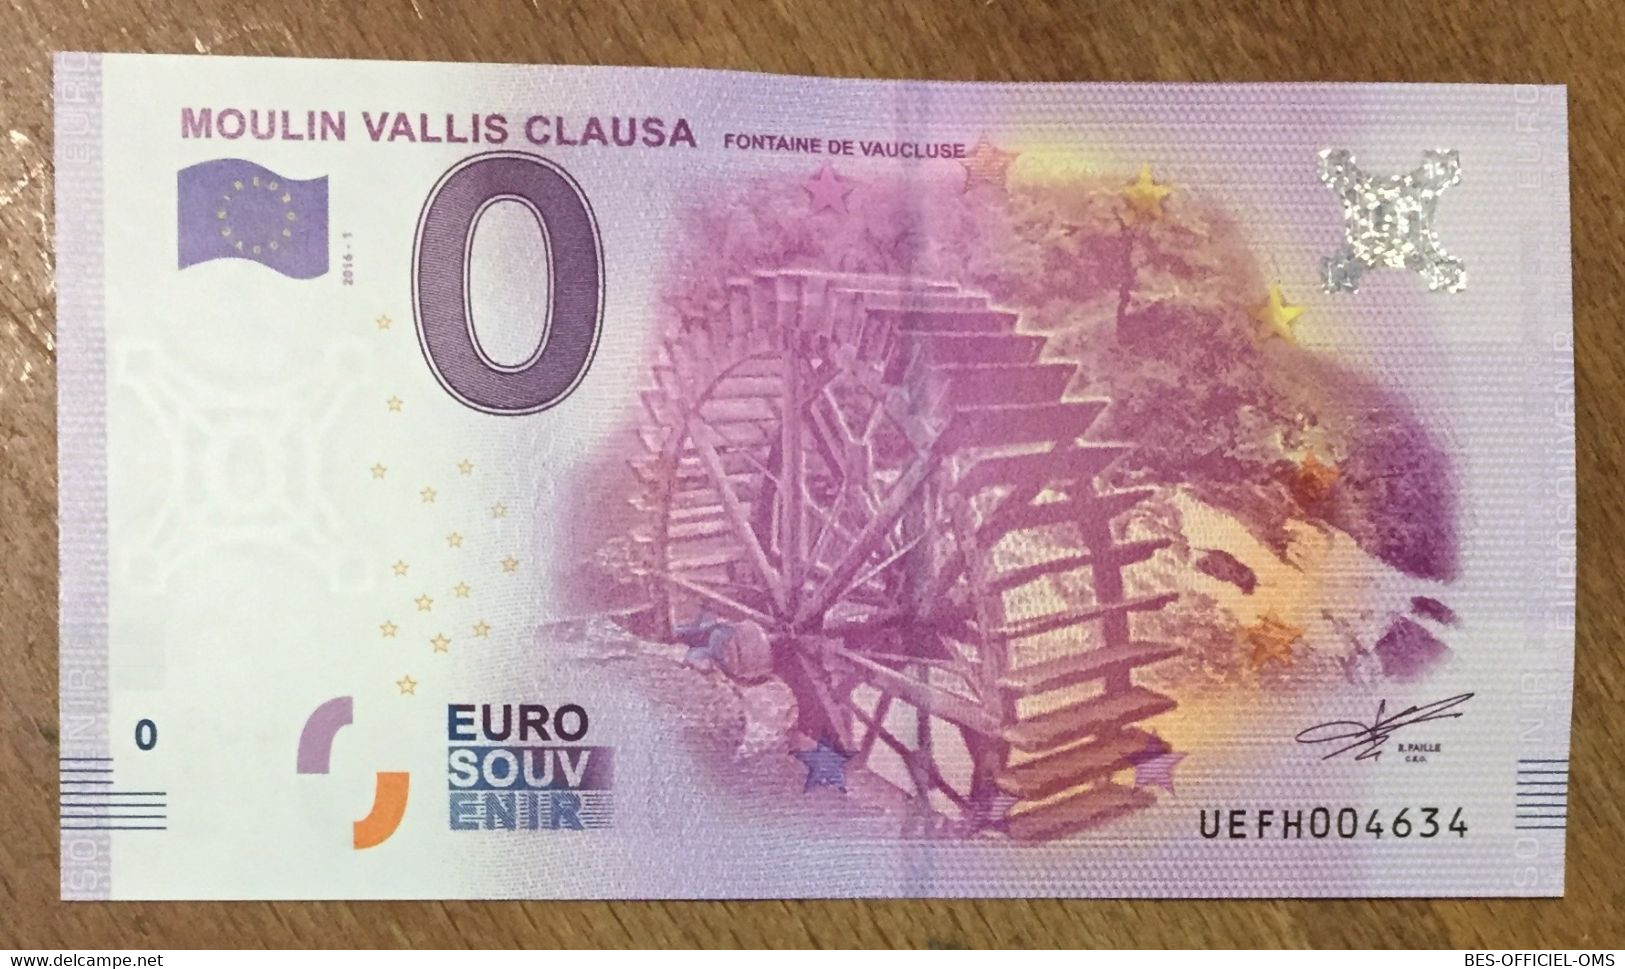 2016 BILLET 0 EURO SOUVENIR DPT 84 MOULIN VALLIS CLAUSA ZERO 0 EURO SCHEIN BANKNOTE PAPER MONEY - Privatentwürfe